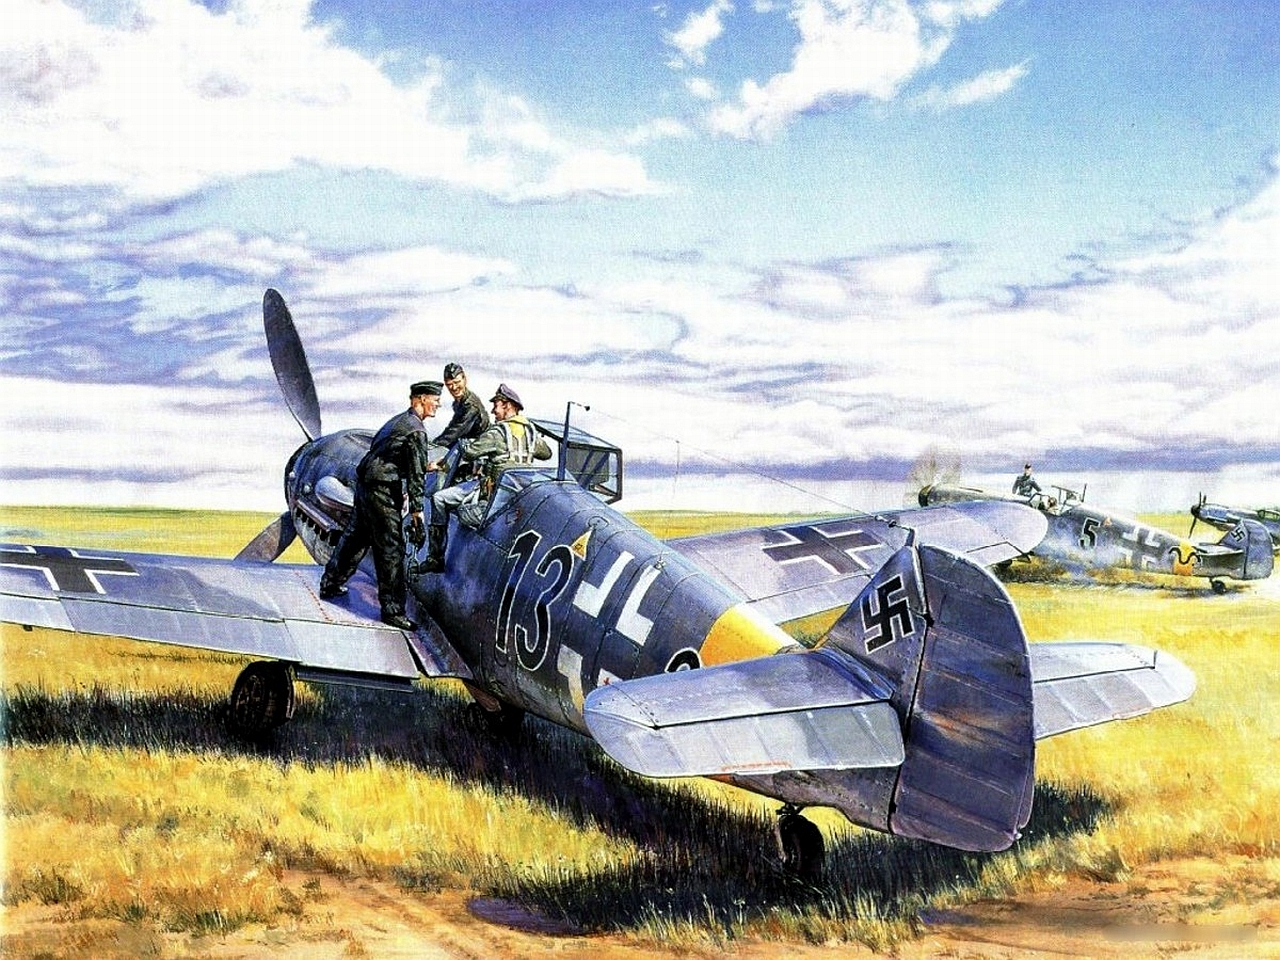 Скачать обои Мессершмитт Bf 109 на телефон бесплатно